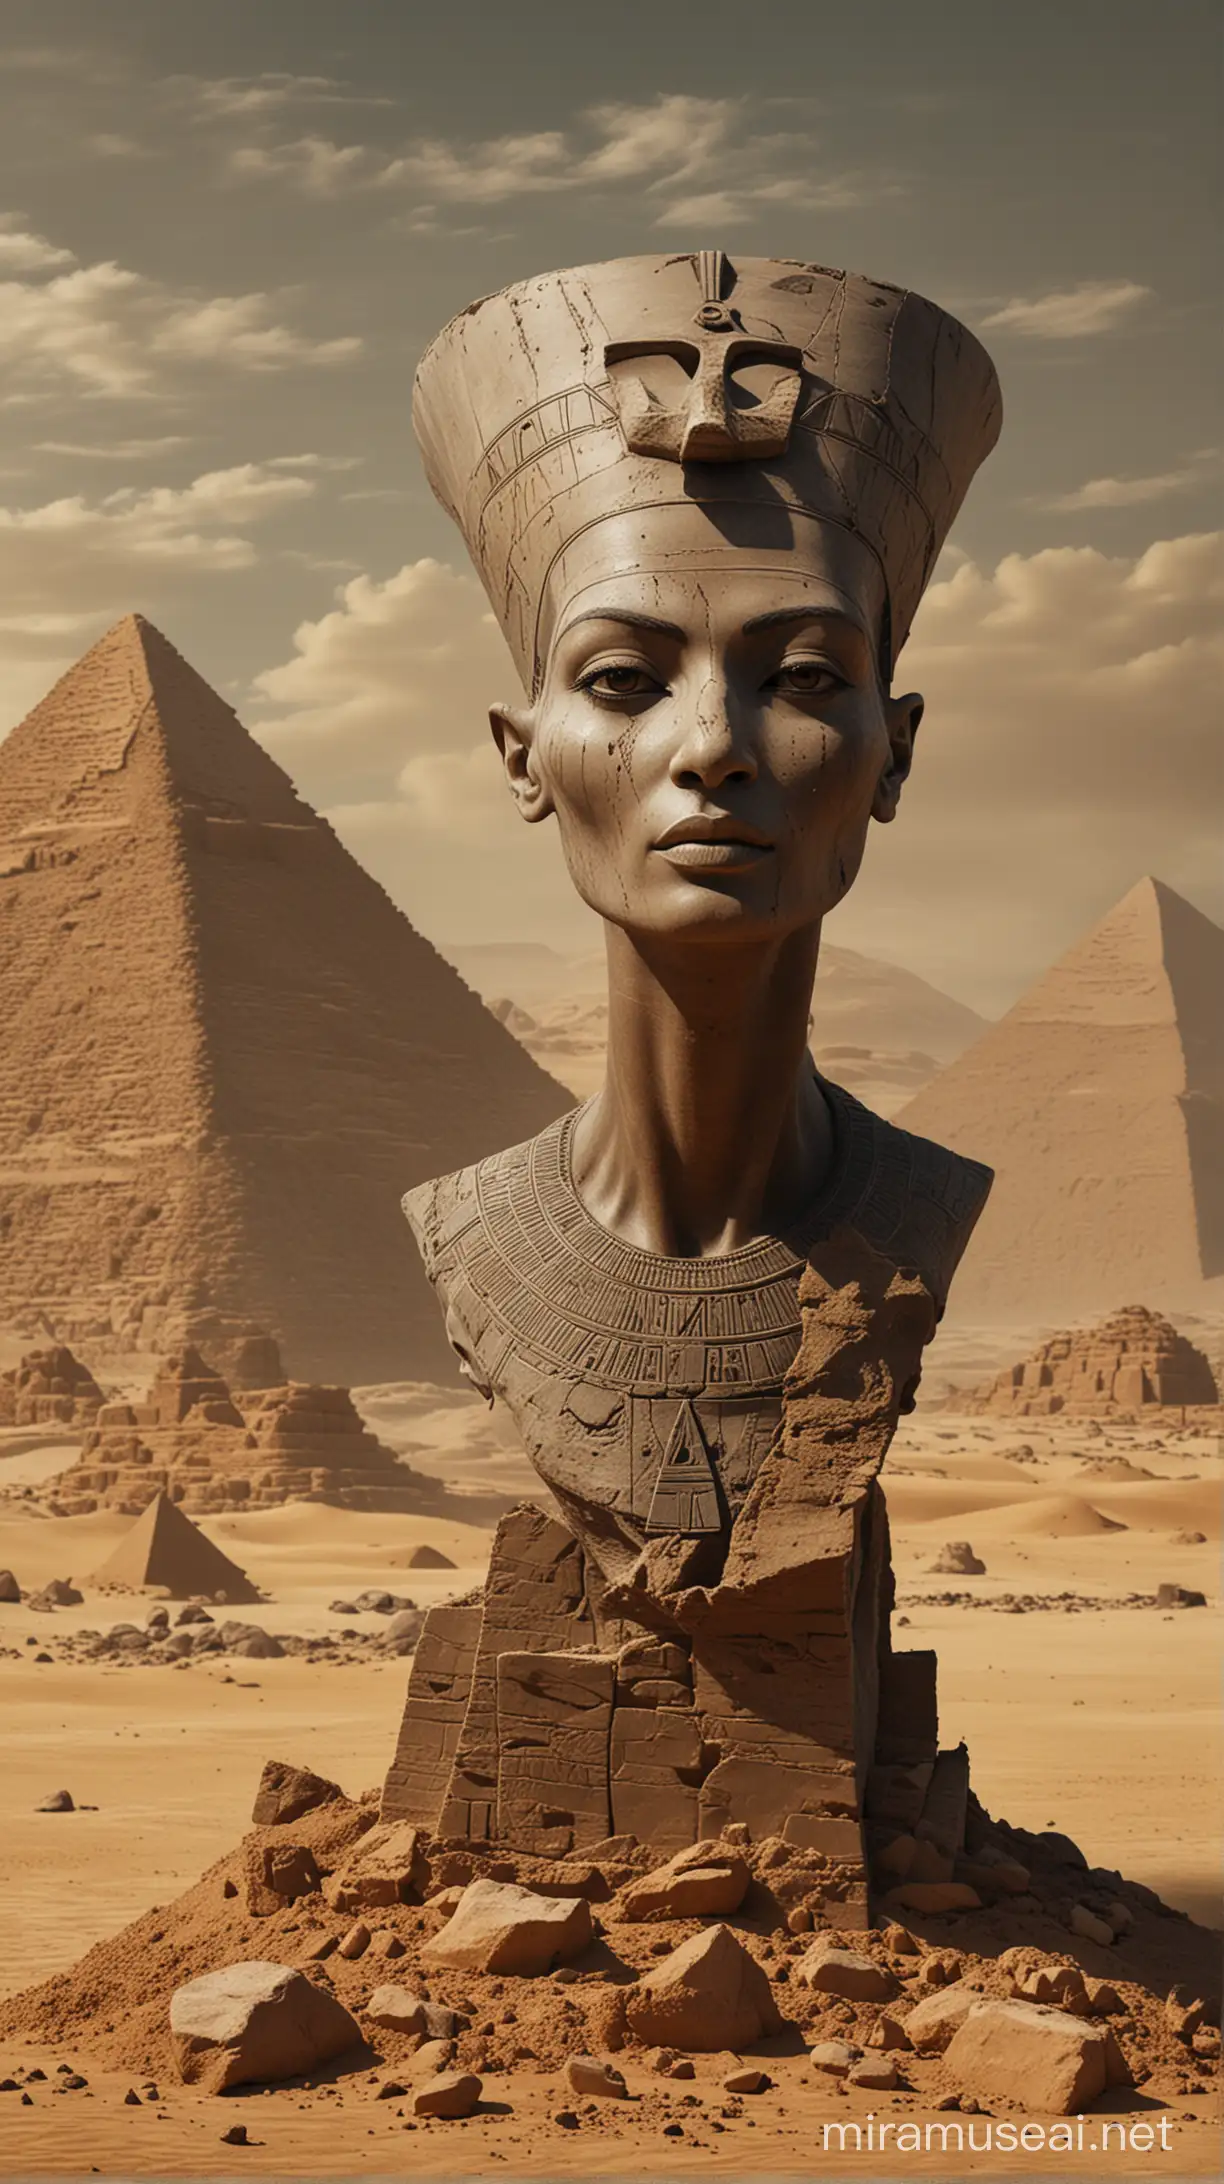 Nefertiti siniestra,terror,ensangrentada,simbología egipcia,texturas orgánicas,realista,colores grises y ocres,fondo desierto y piramides